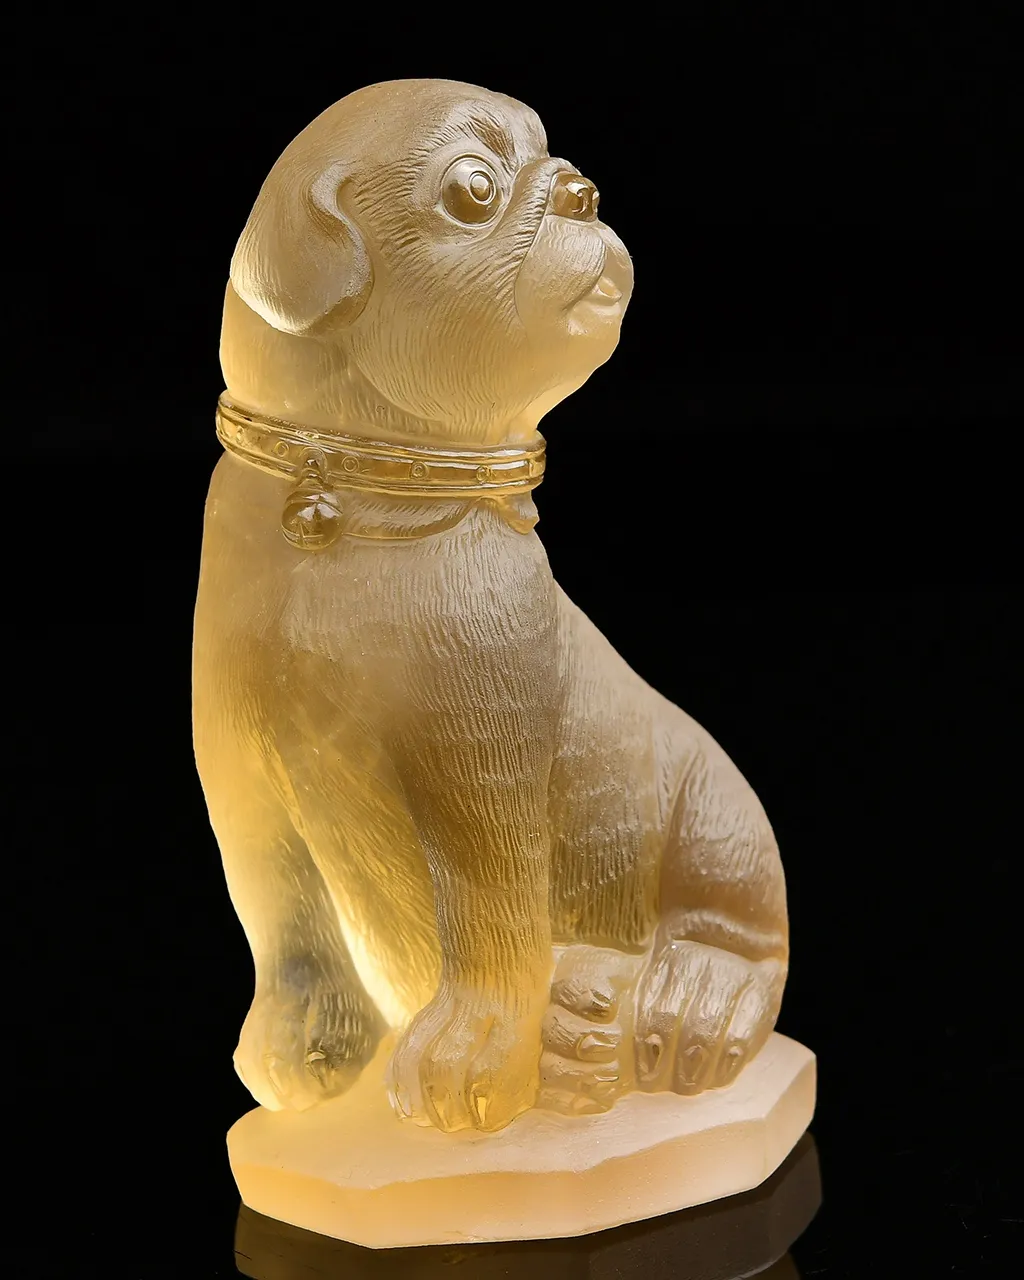 招财旺财神器，天然黄水晶旺财狗摆件  狗是忠诚和勇敢的象征，被视为吉祥的动物，黄水晶招财进财，手工雕刻，雕工栩栩如生，实物非常漂亮 112*64*49mm，重403g